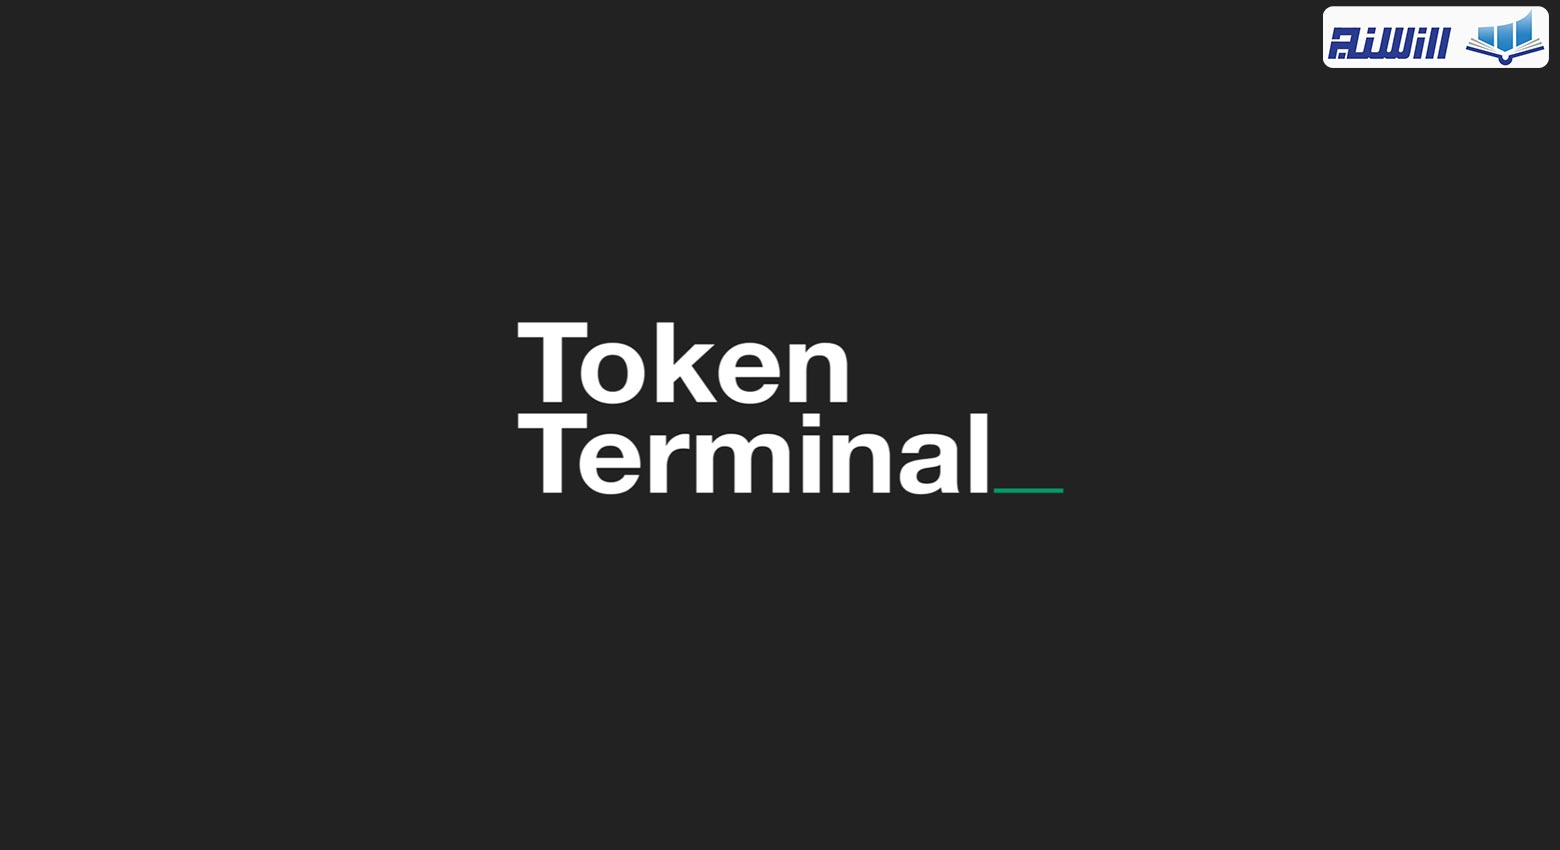 آموزش سایت توکن ترمینال Token Terminal(نحوه کار با پلتفرم توکن ترمینال)